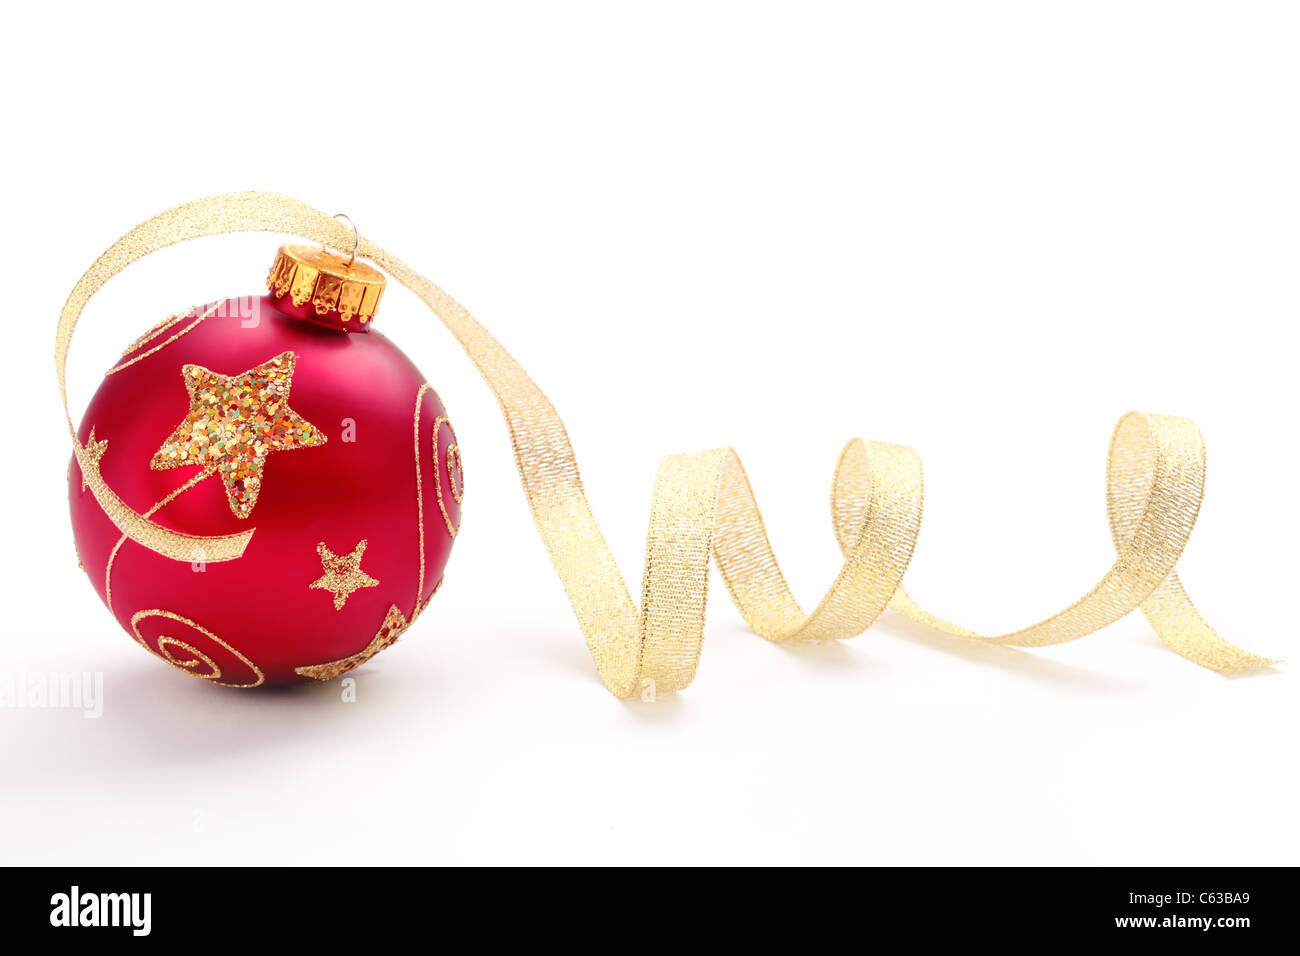 Rote Weihnachtskugel mit Goldband auf weißem Hintergrund. Stockfoto